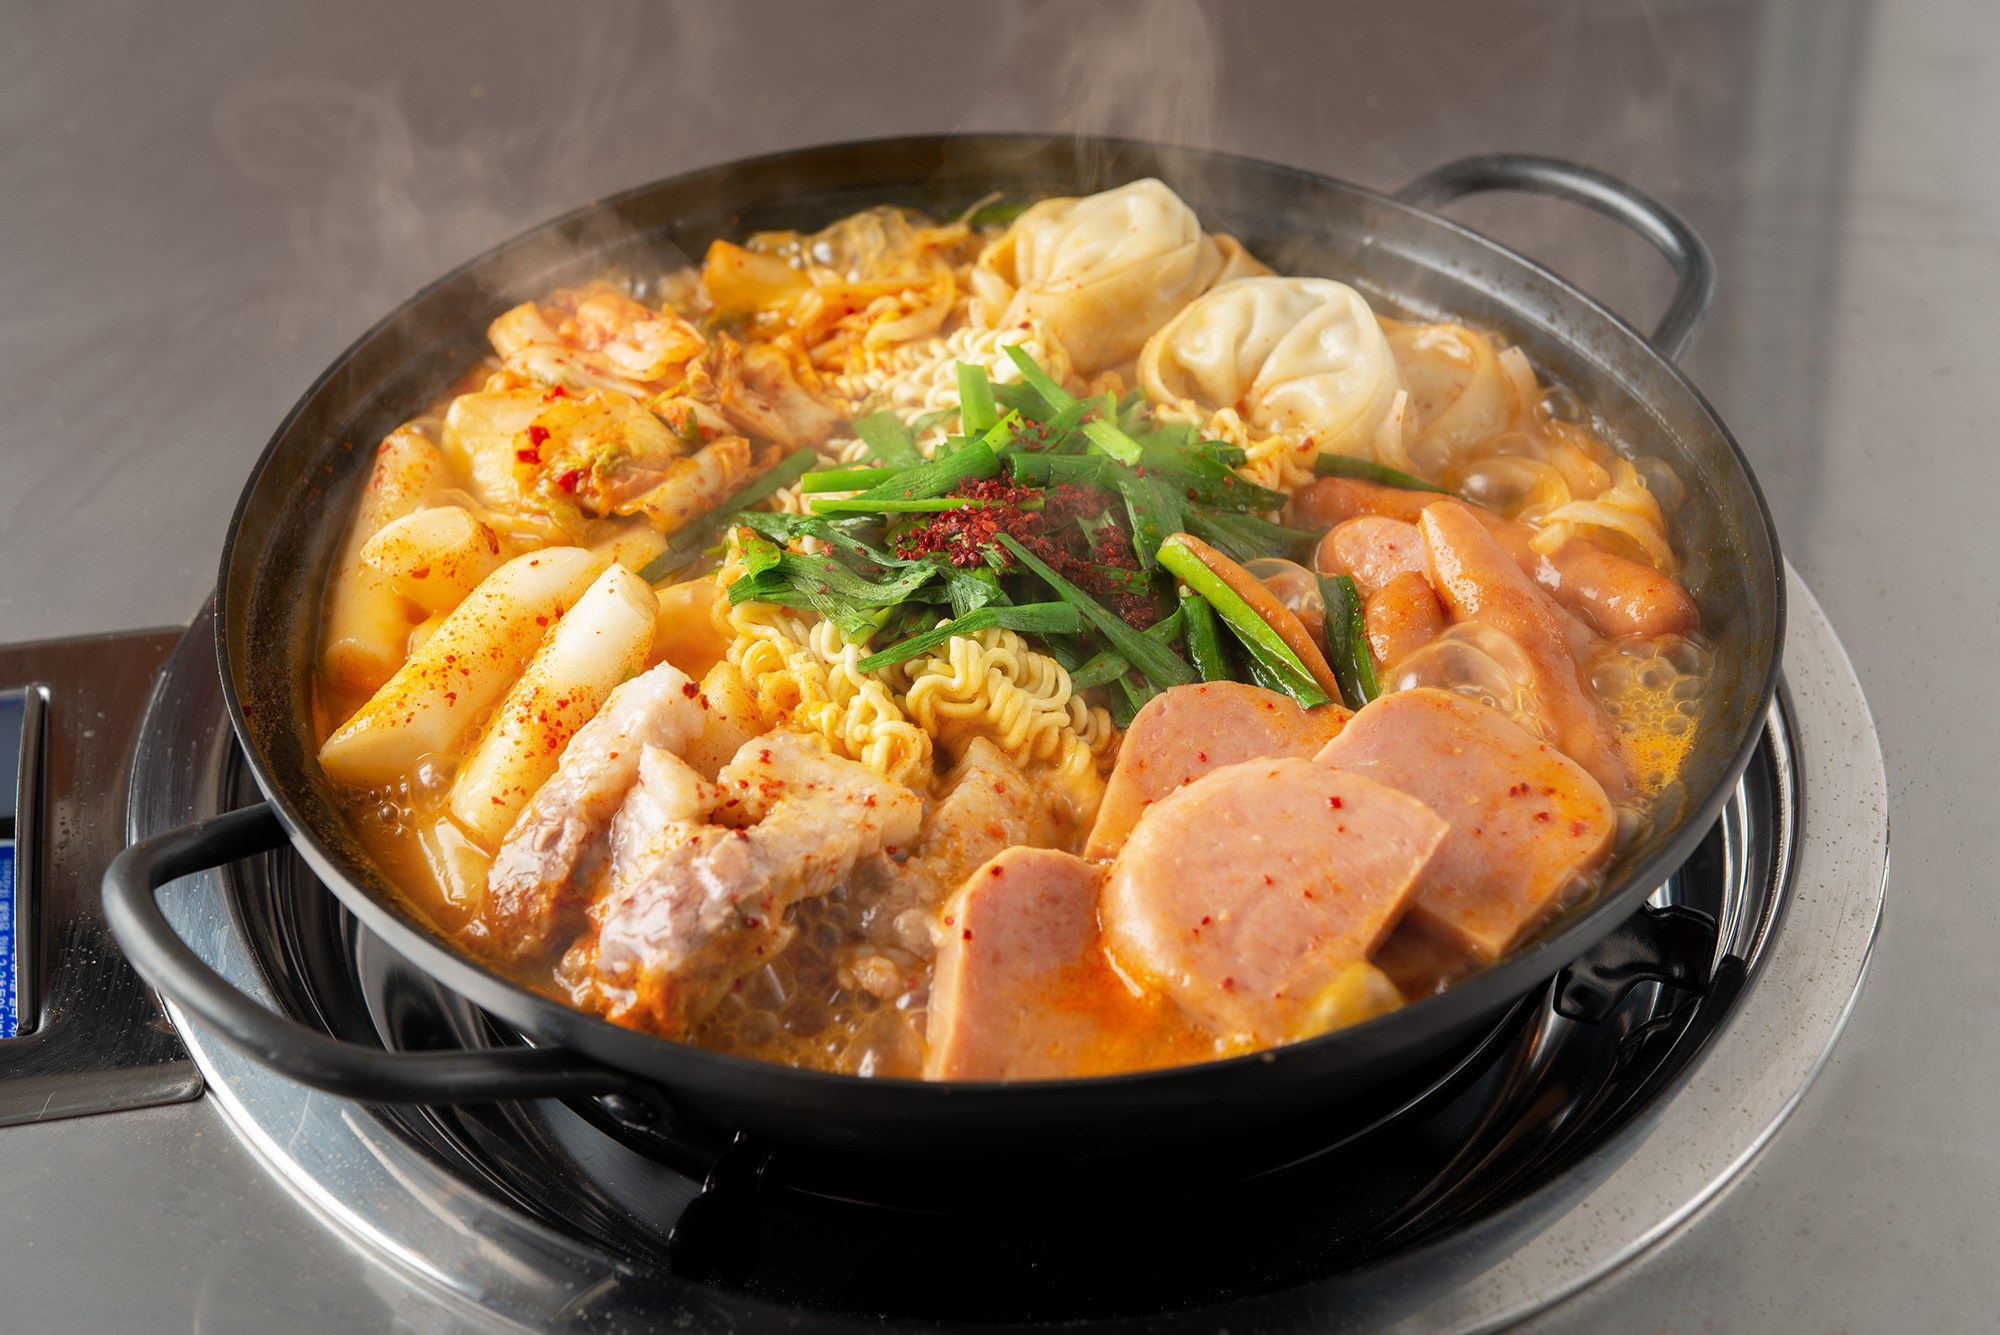 チゲ鍋 1 サムギョプサル専門店 ベジテジや 四条烏丸の韓国料理店